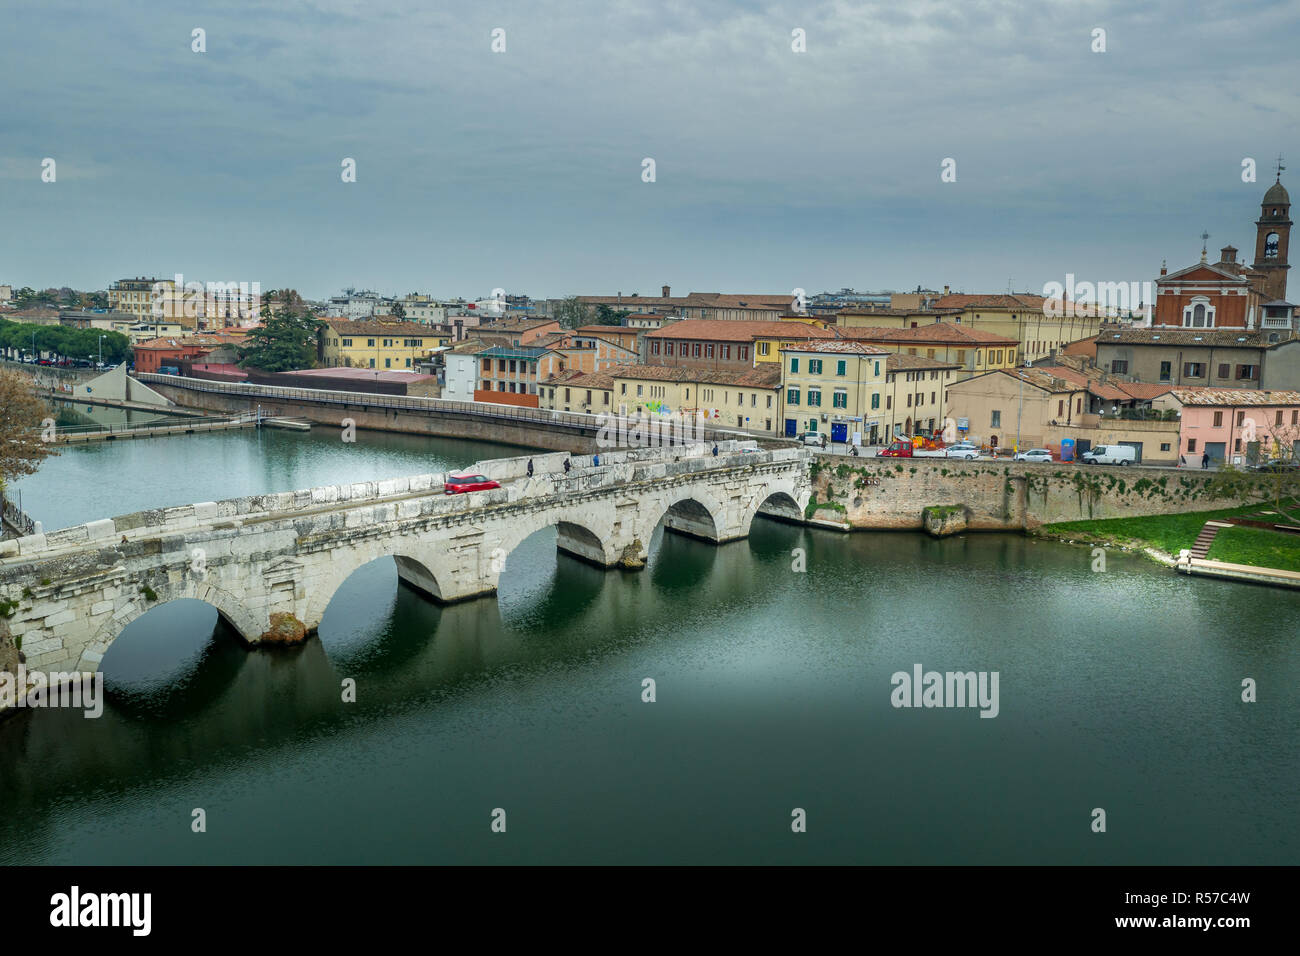 Vista aérea de la playa de la ciudad adriática de Rimini en el invierno con el antiguo puente de Tiberio, Malatesta Sismondo castillo y el ayuntamiento gótico Foto de stock